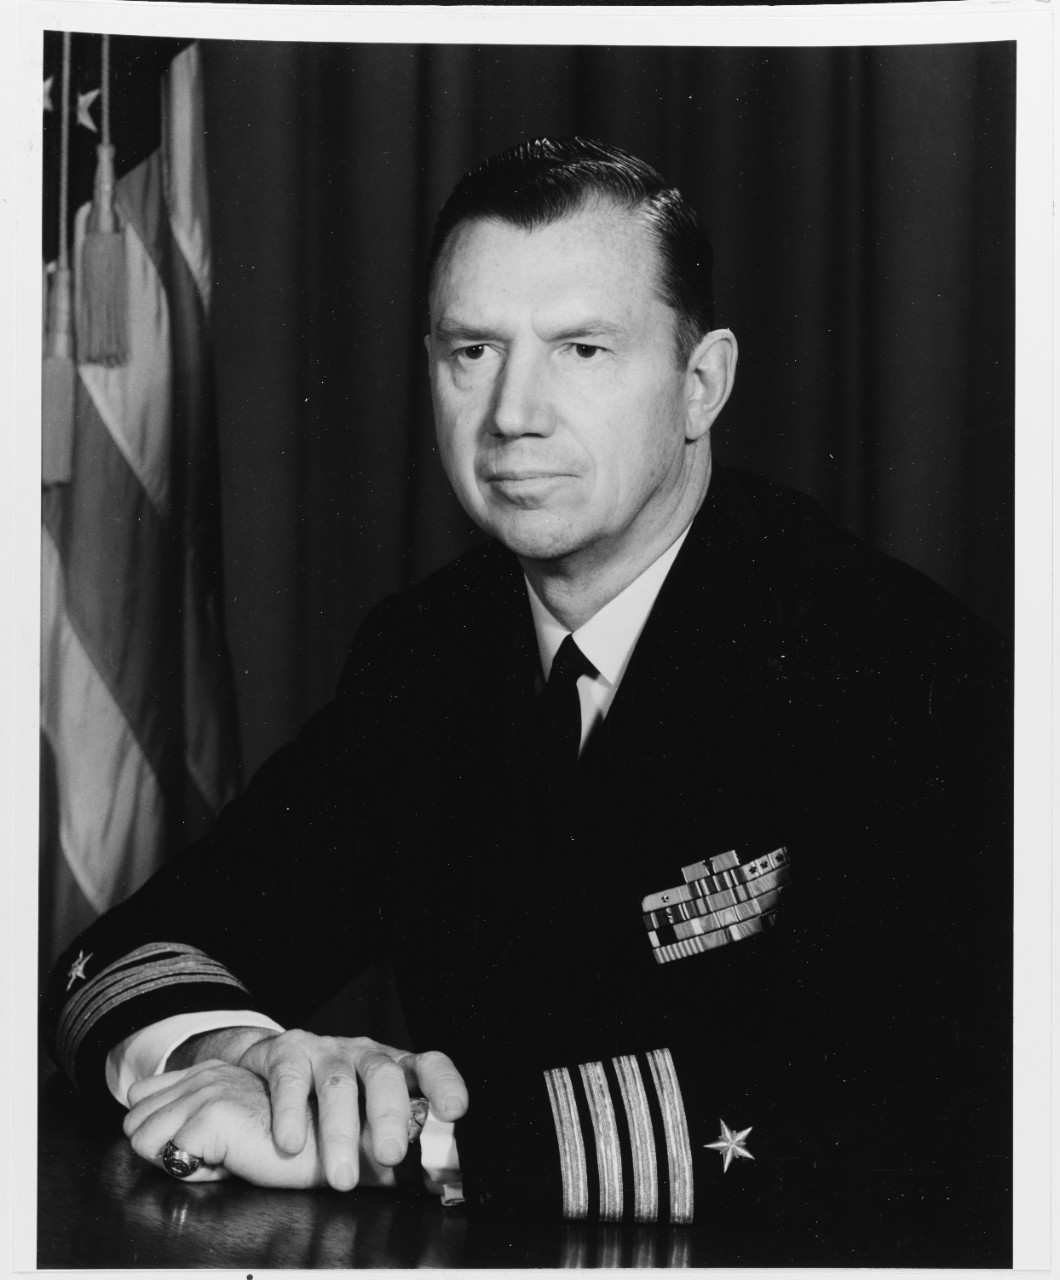 Captain John D.H. Kane Jr., USN